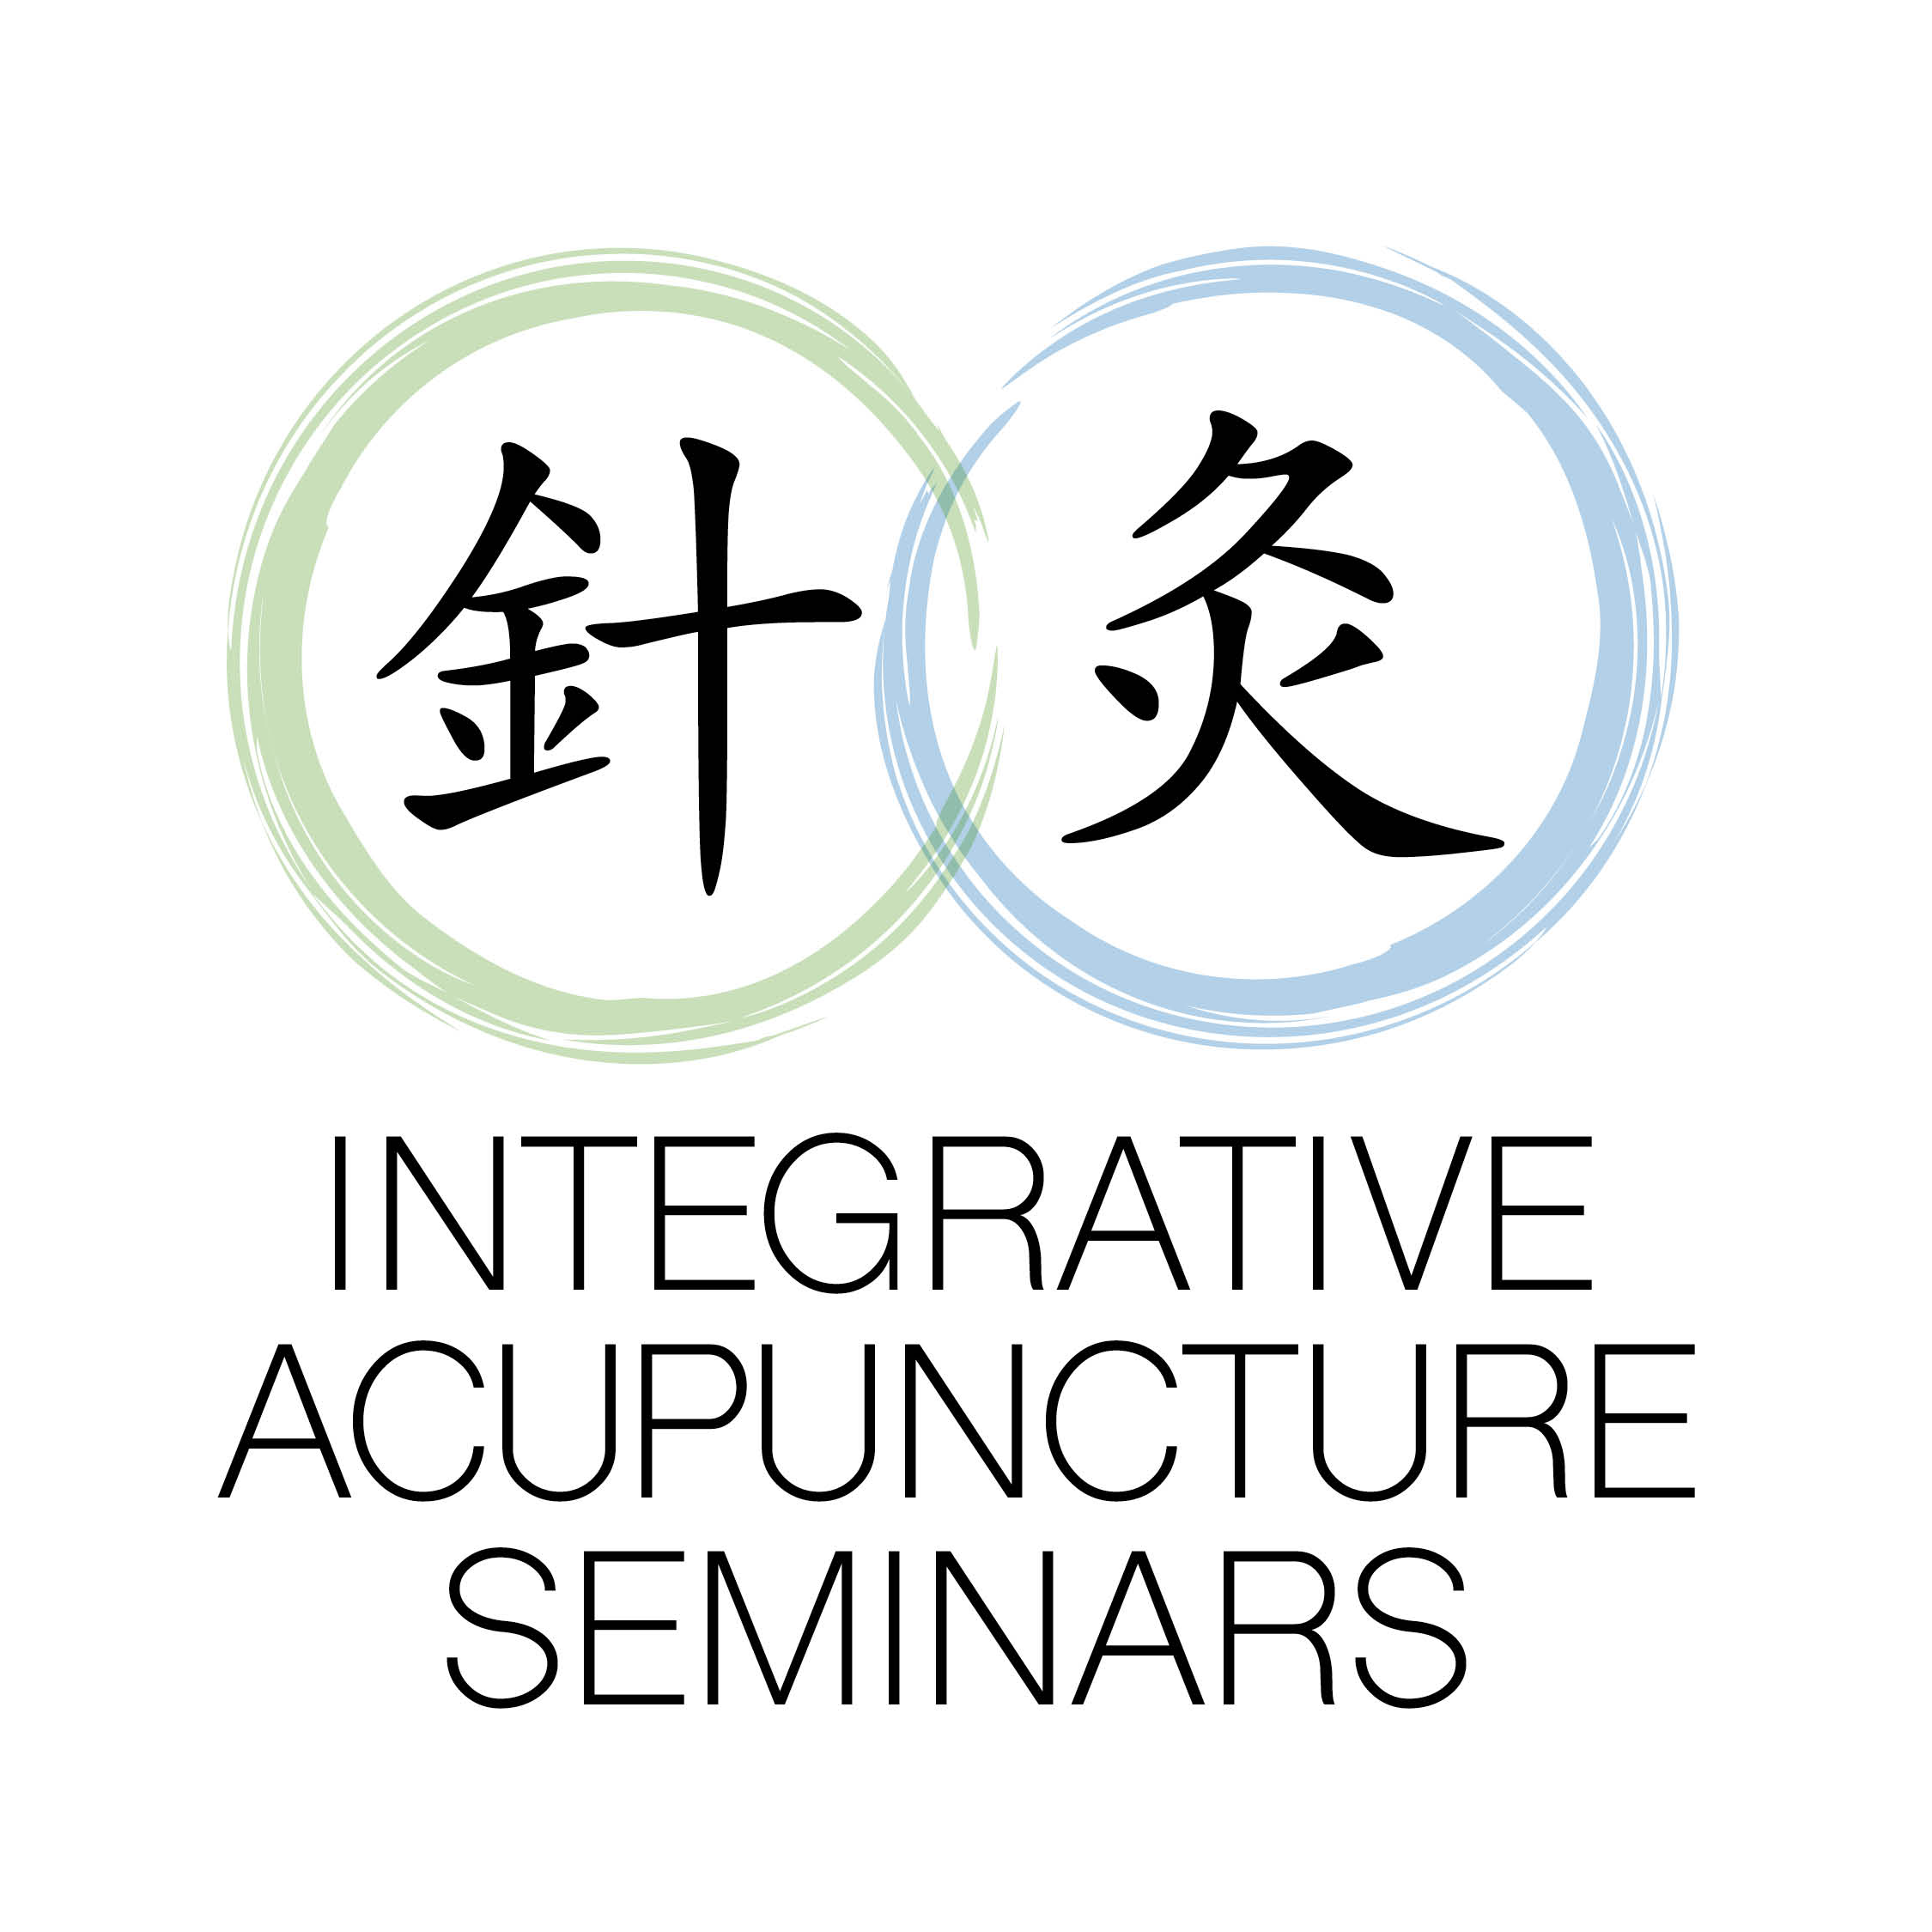 Integrative Acupuncture Seminars